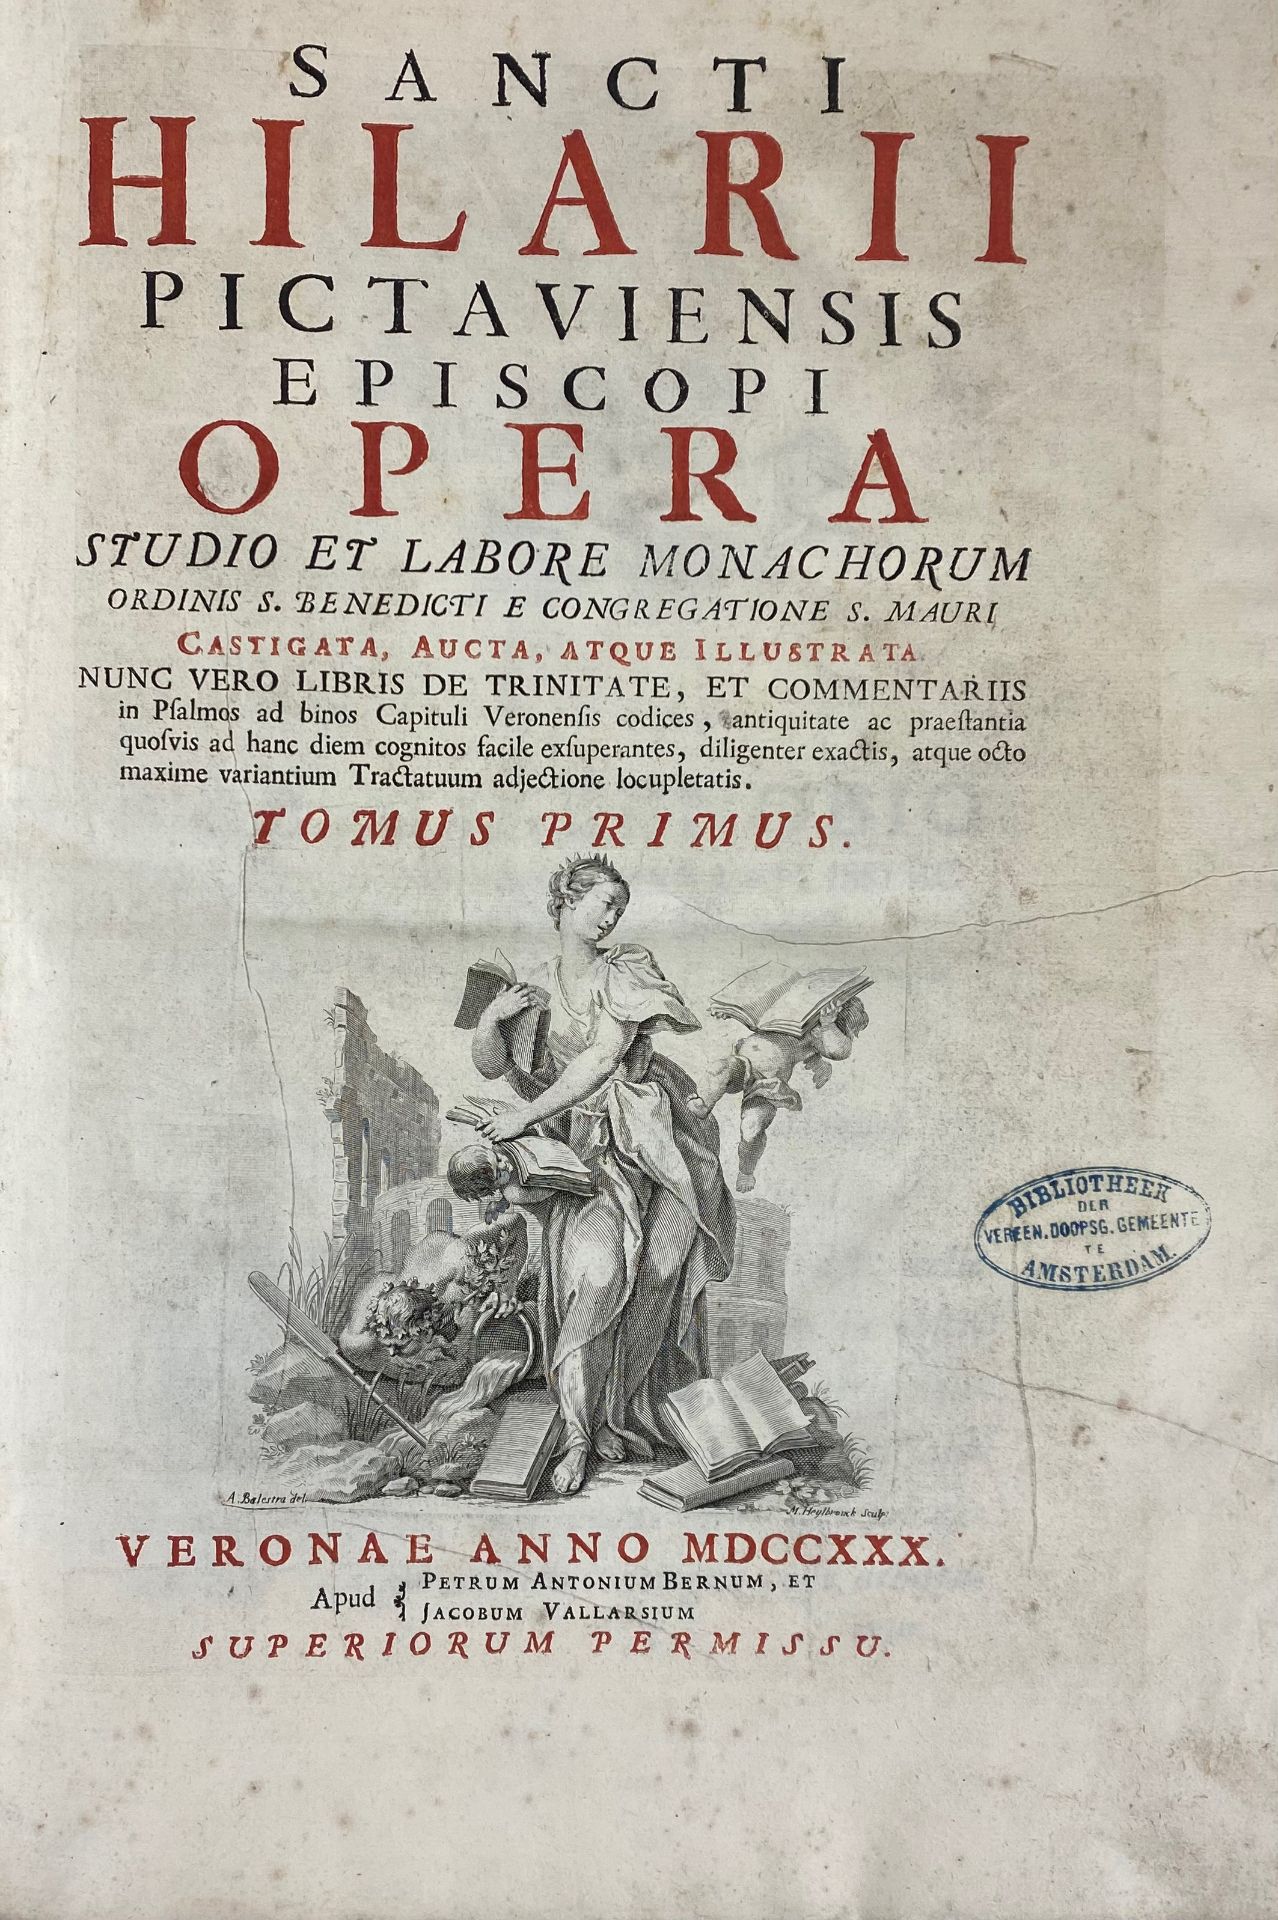 HILARIUS. Opera. Studio et labore monachorum ordinis S. Benedict e congregatione S